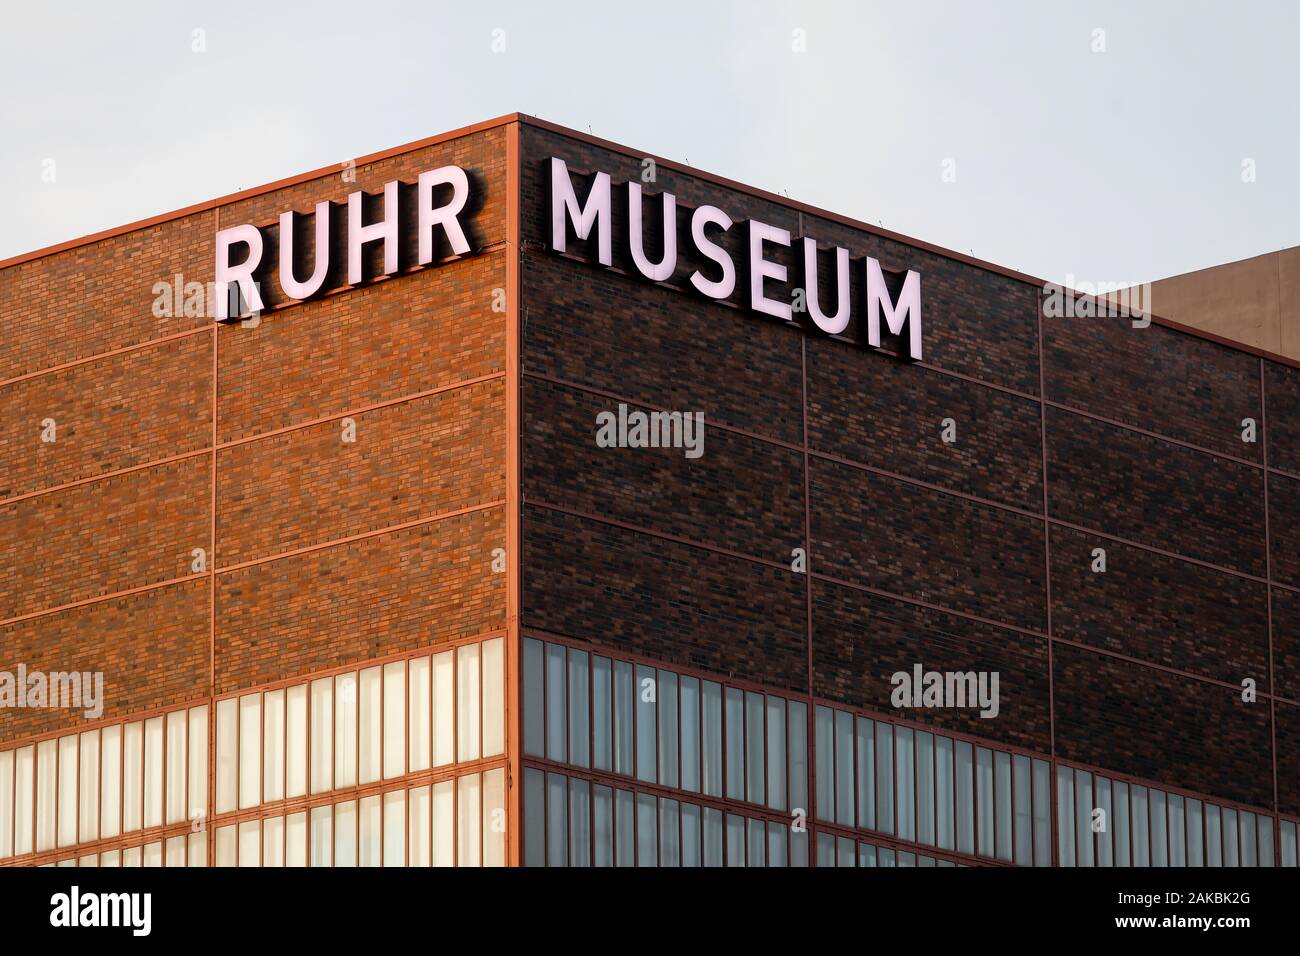 Essen, la zona della Ruhr, Renania settentrionale-Vestfalia, Germania - Museo della Ruhr a Zeche Zollverein, patrimonio mondiale UNESCO Zollverein, illuminato scritte sul fa Foto Stock